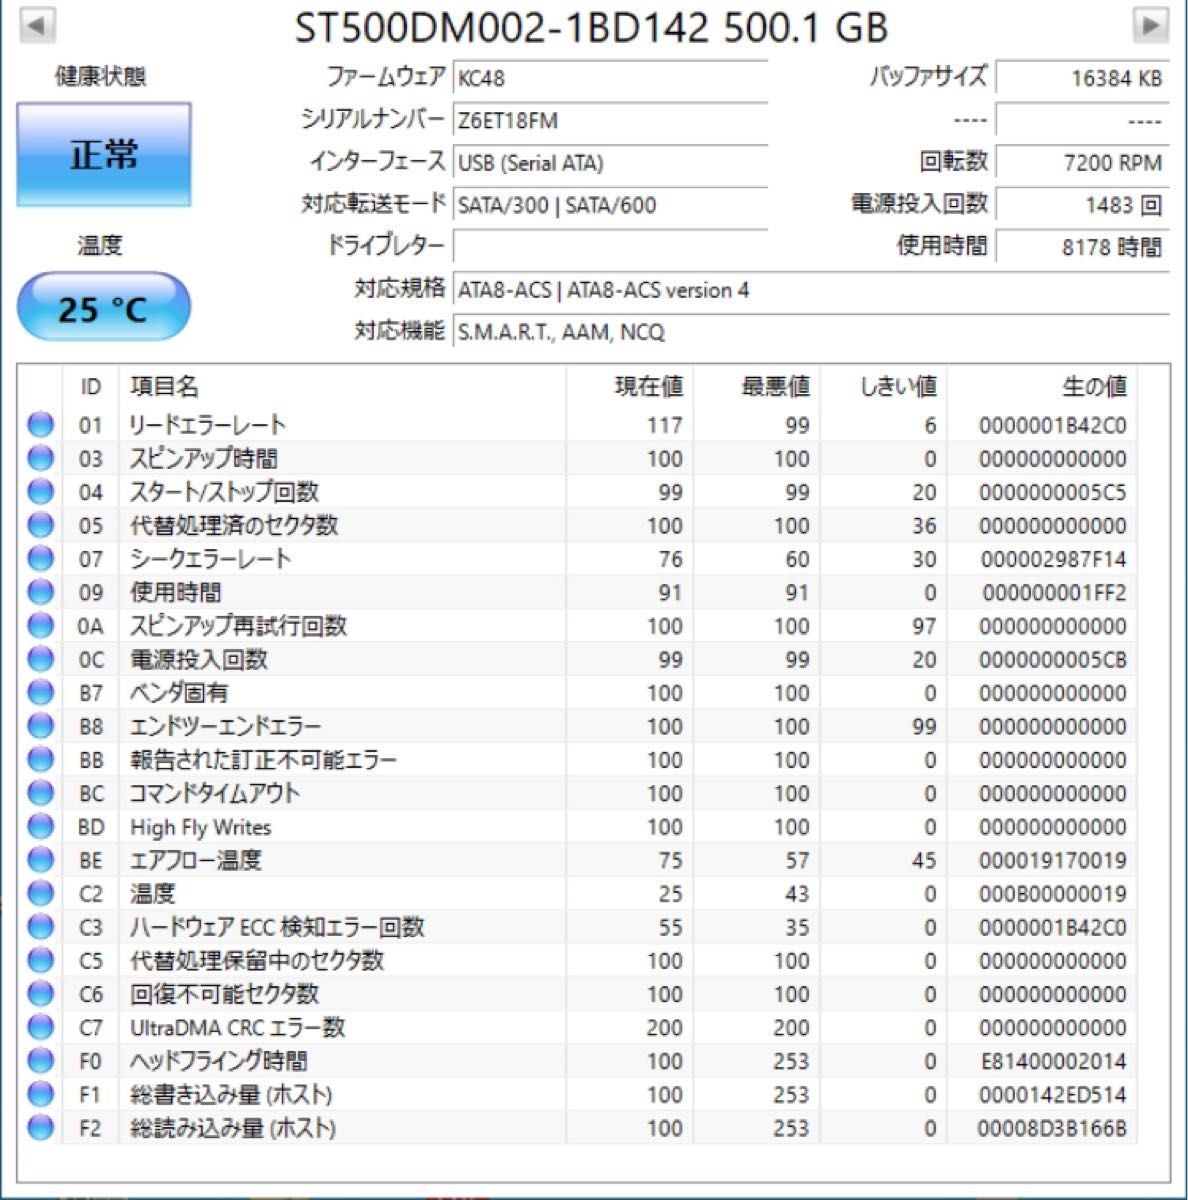 【動作確認済】SEAGATE 3.5インチ 500GB HDD ハードディスク 【2個セット】